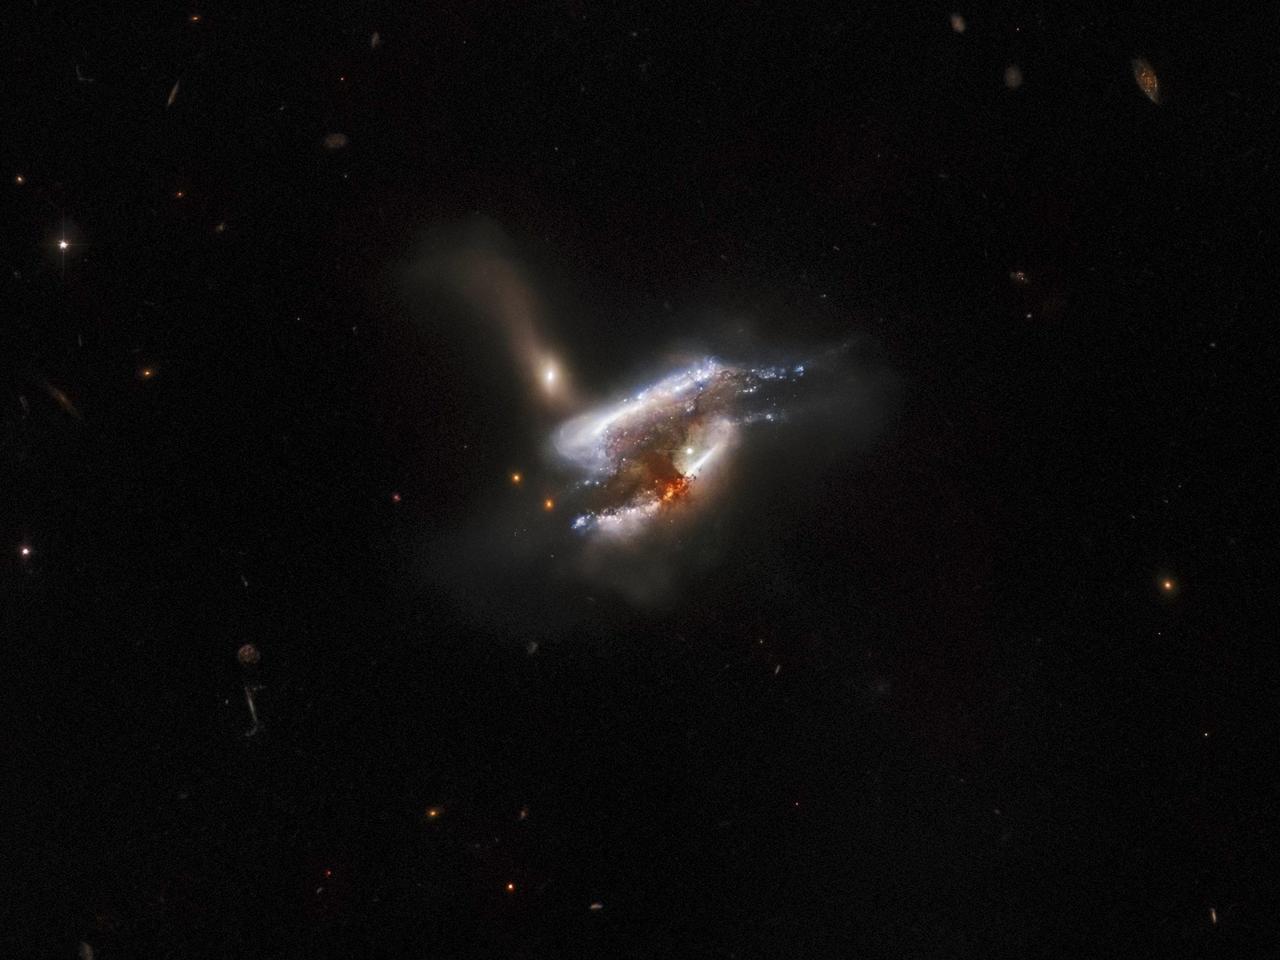 ハッブル宇宙望遠鏡が捉えた、3つの銀河が衝突している様子。